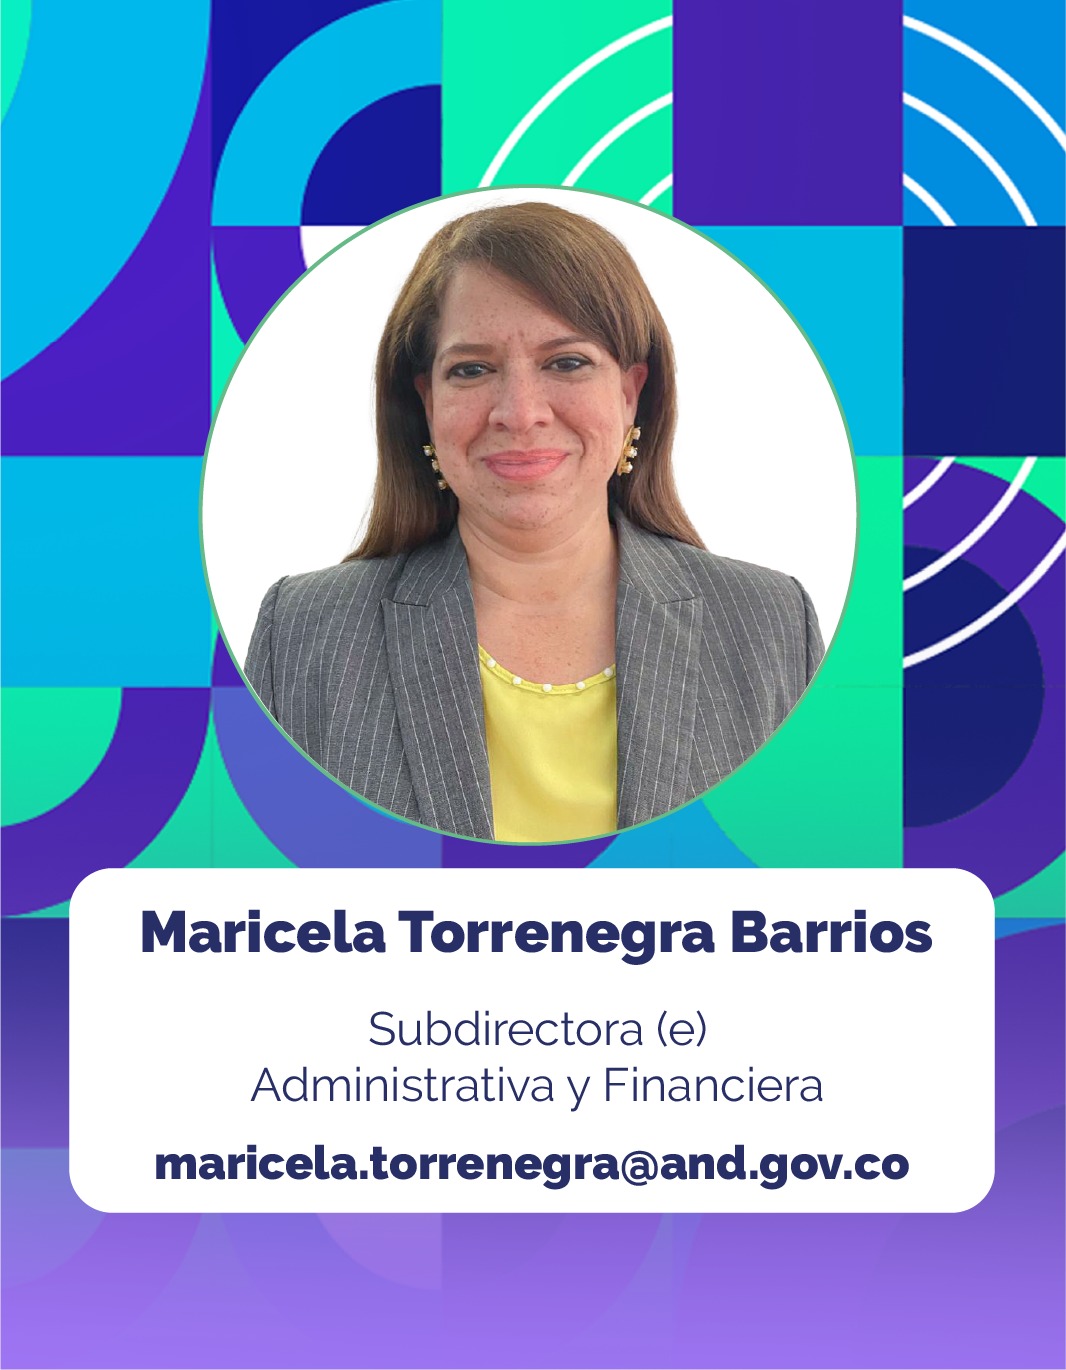 Foto de Maricela Torrenegra Barrios, Subdirectora(e) Administrativa y Financiera de la Corporación Agencia Nacional de Gobierno Digital - AND